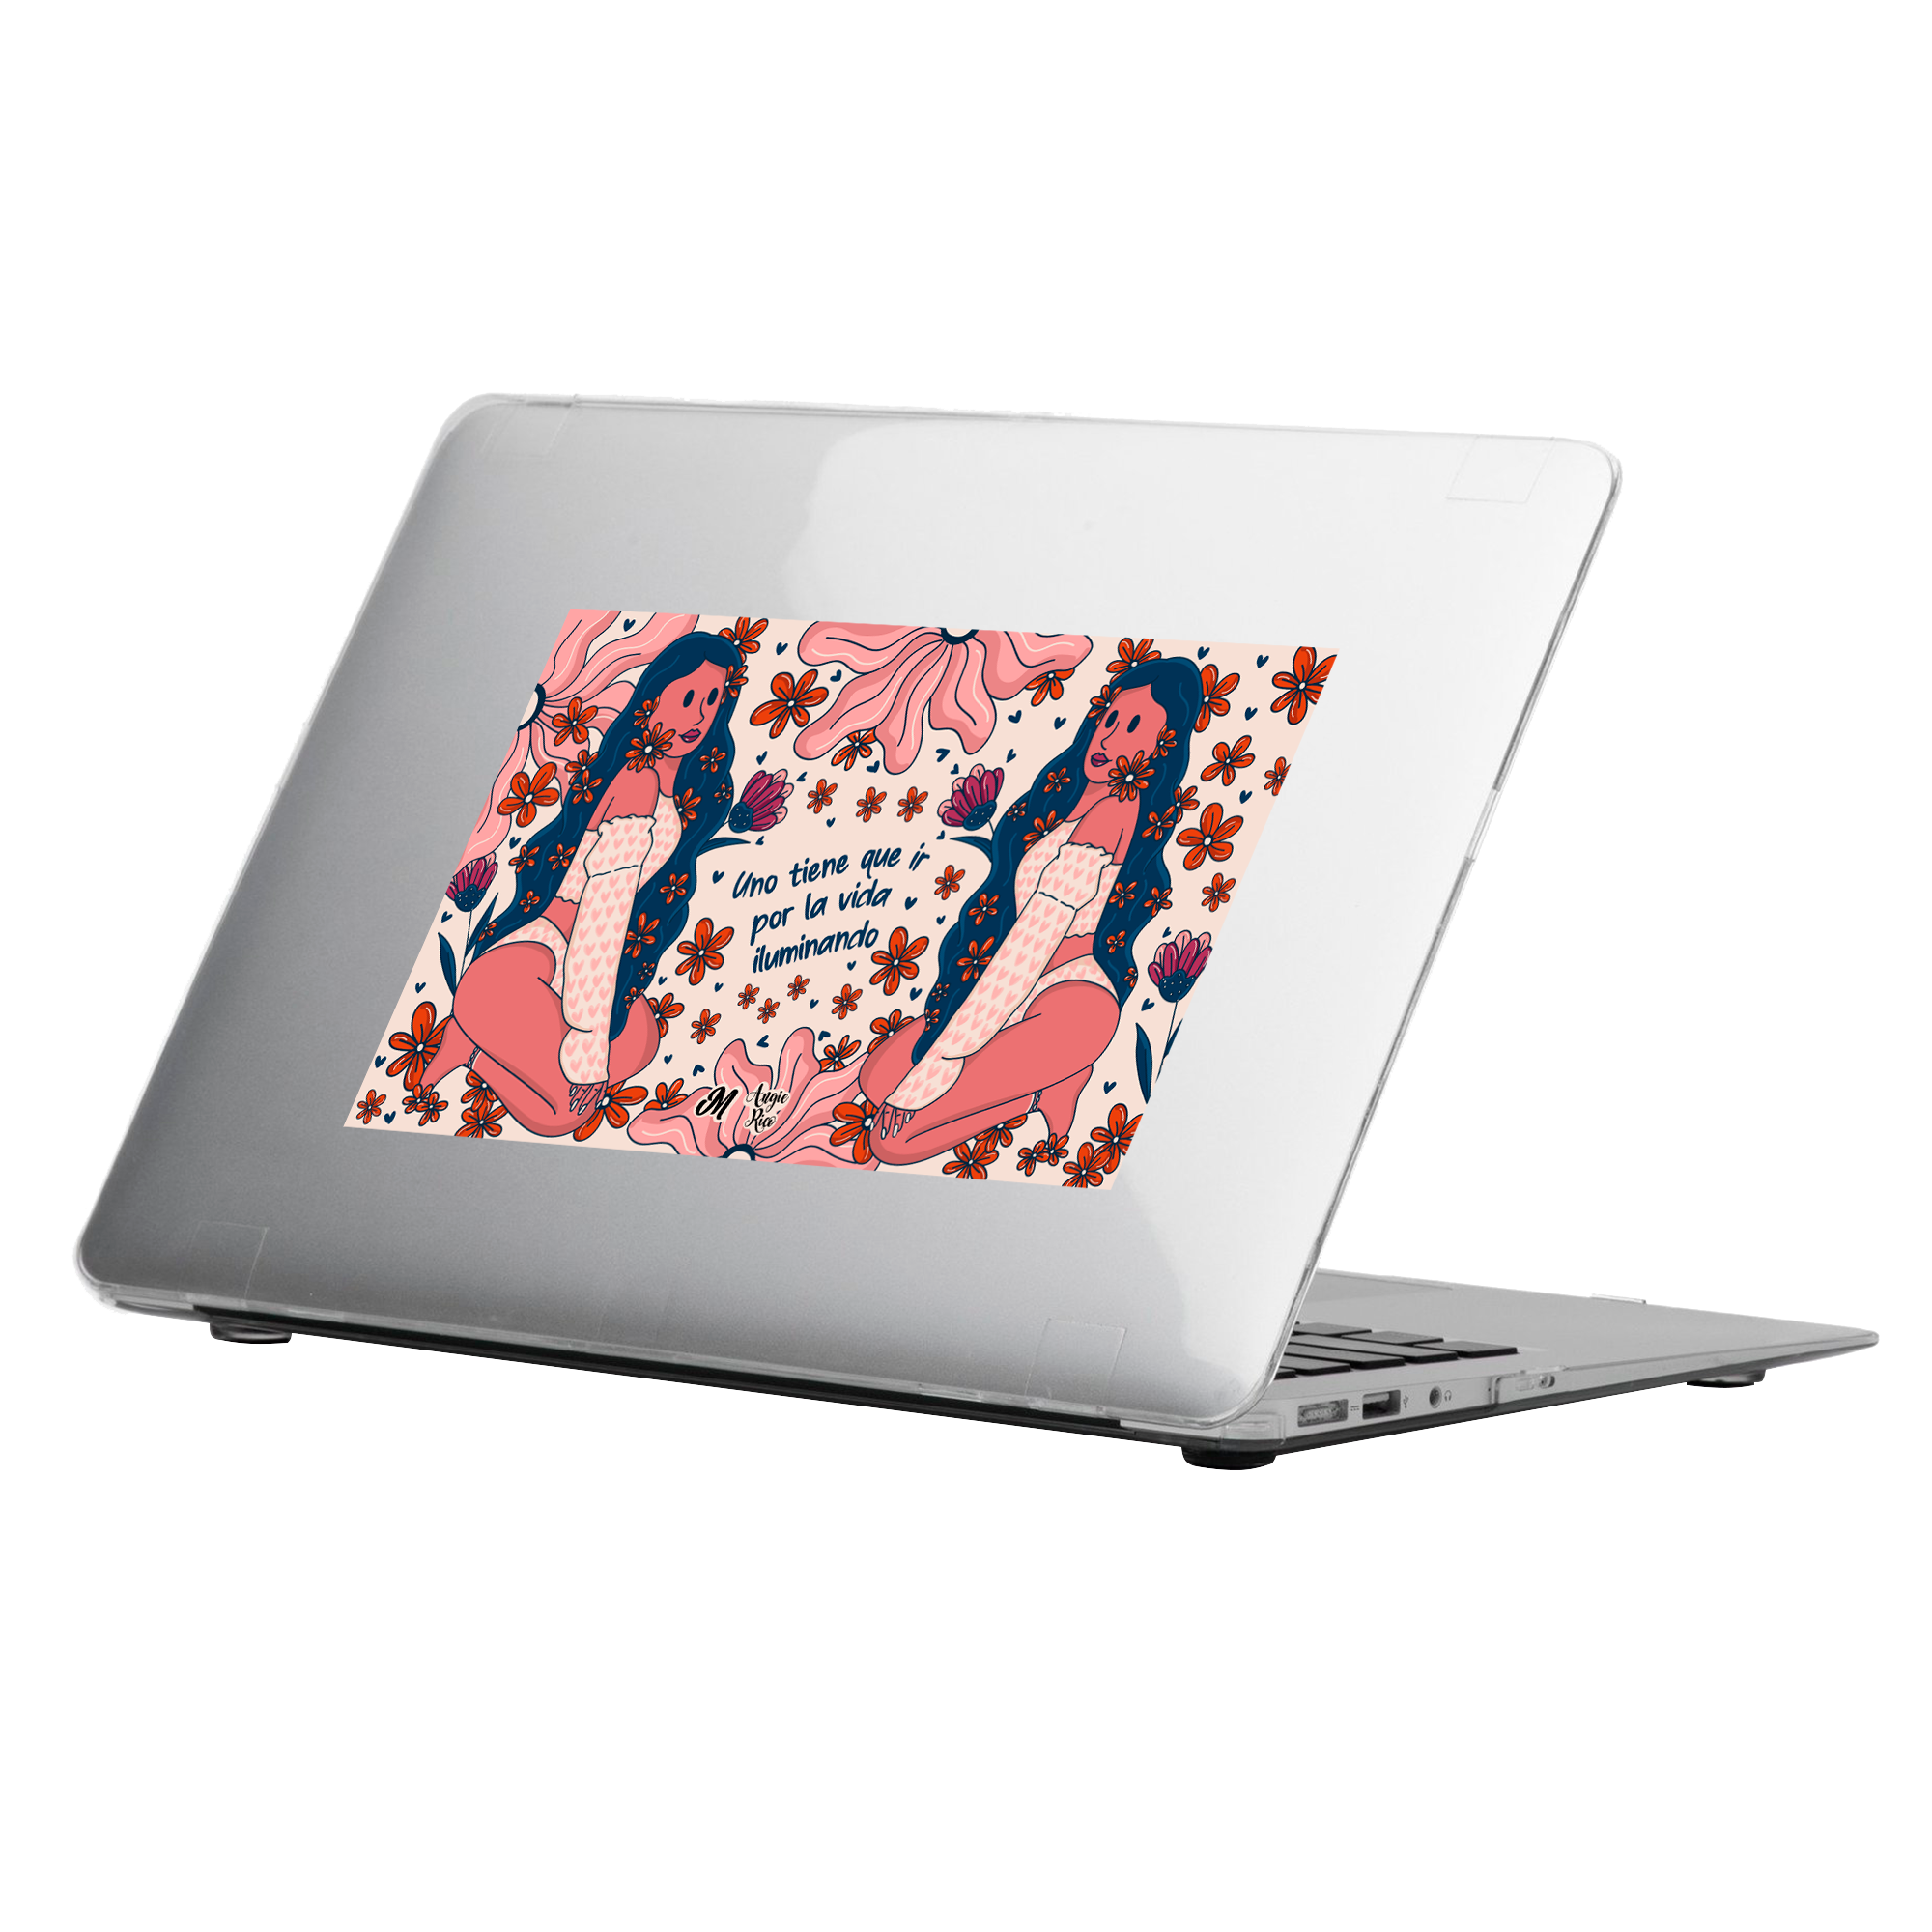 Mujer Iluminando MacBook Case - Mandala Cases